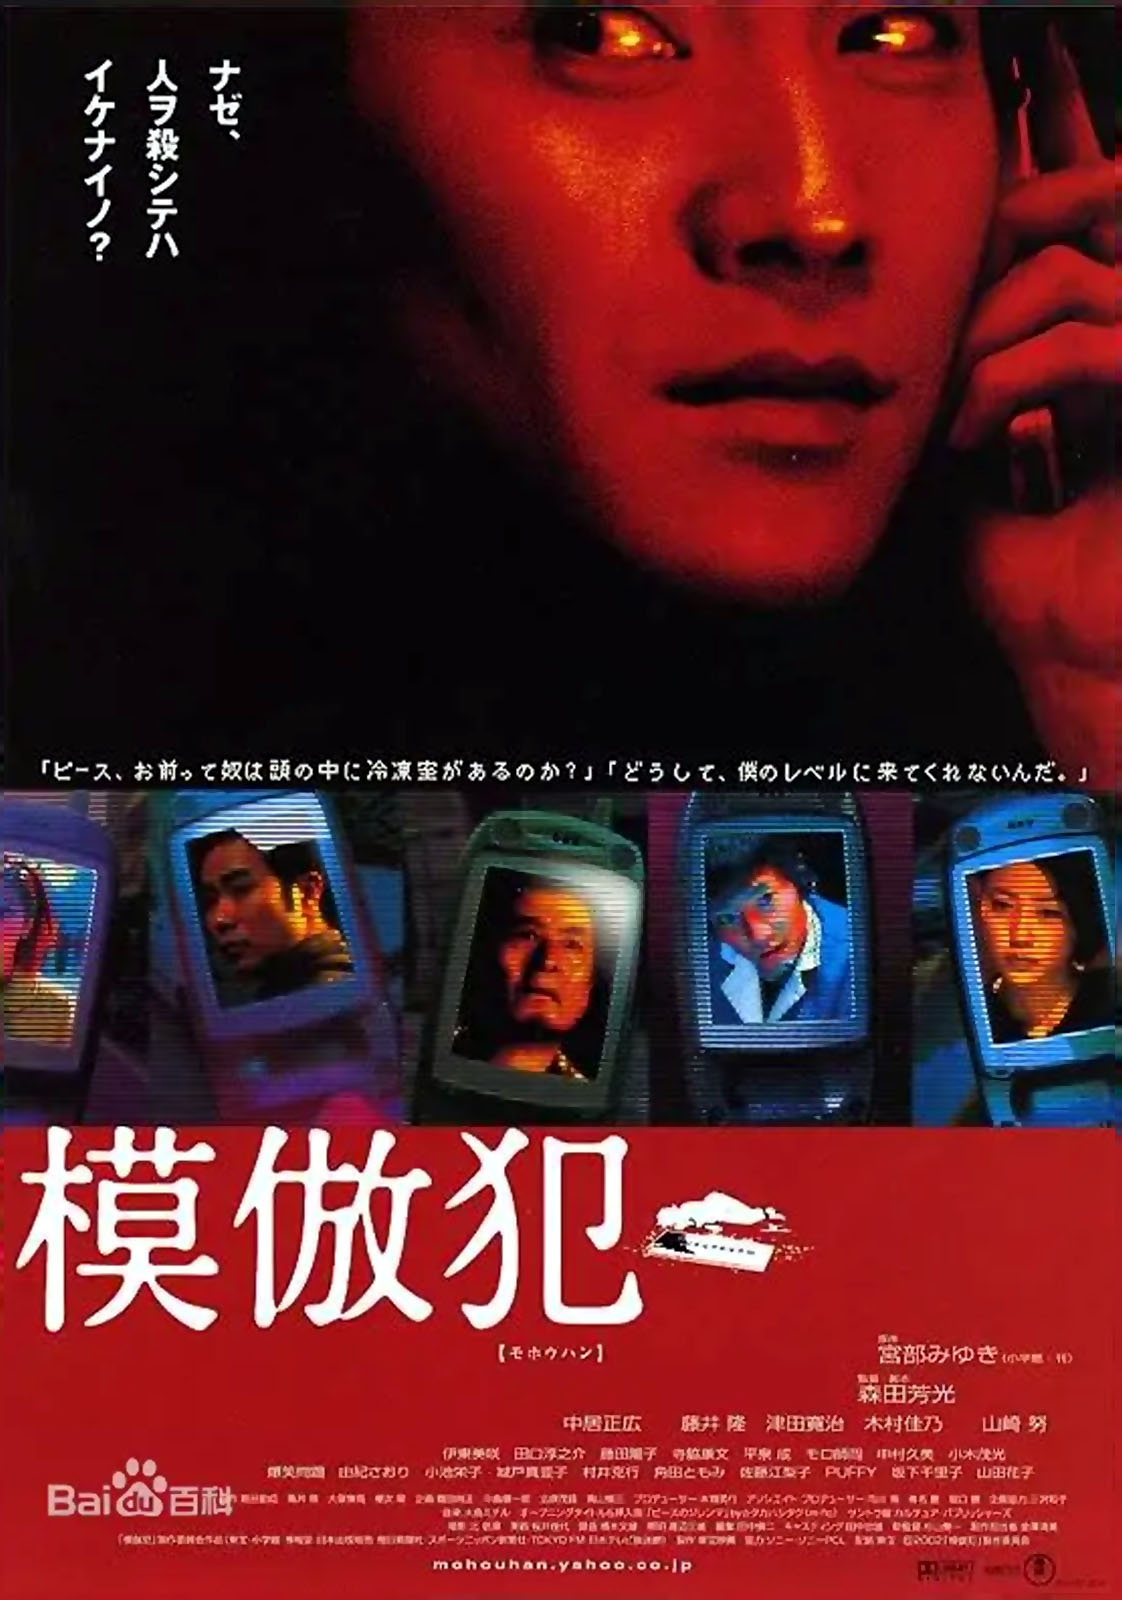 MOHO HAN (2002) by Yoshimitsu Morita, Cinefania